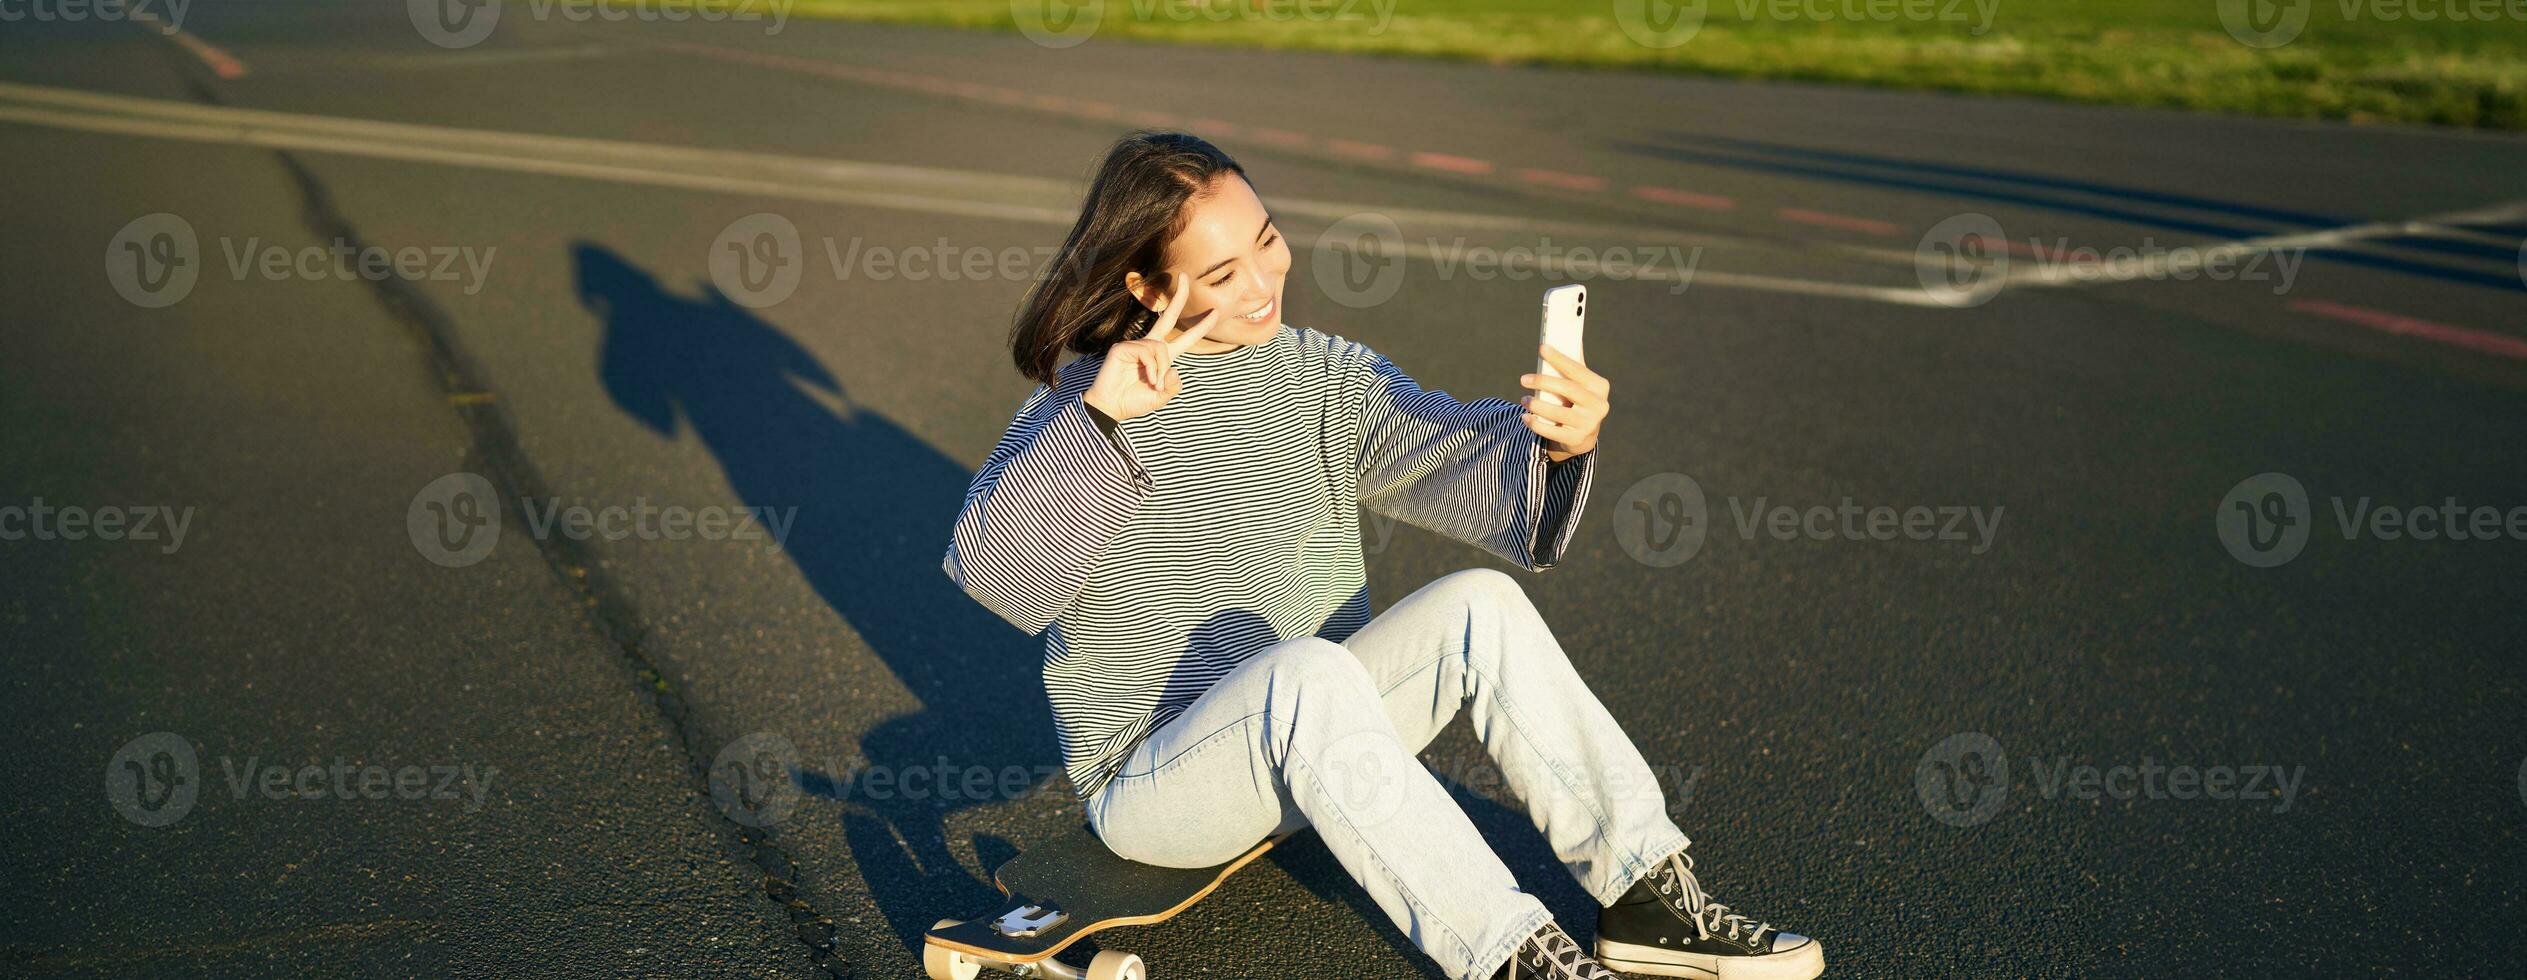 contento asiatico ragazza si siede su skateboard, prende autoscatto con longboard, fa carino facce, soleggiato giorno all'aperto foto